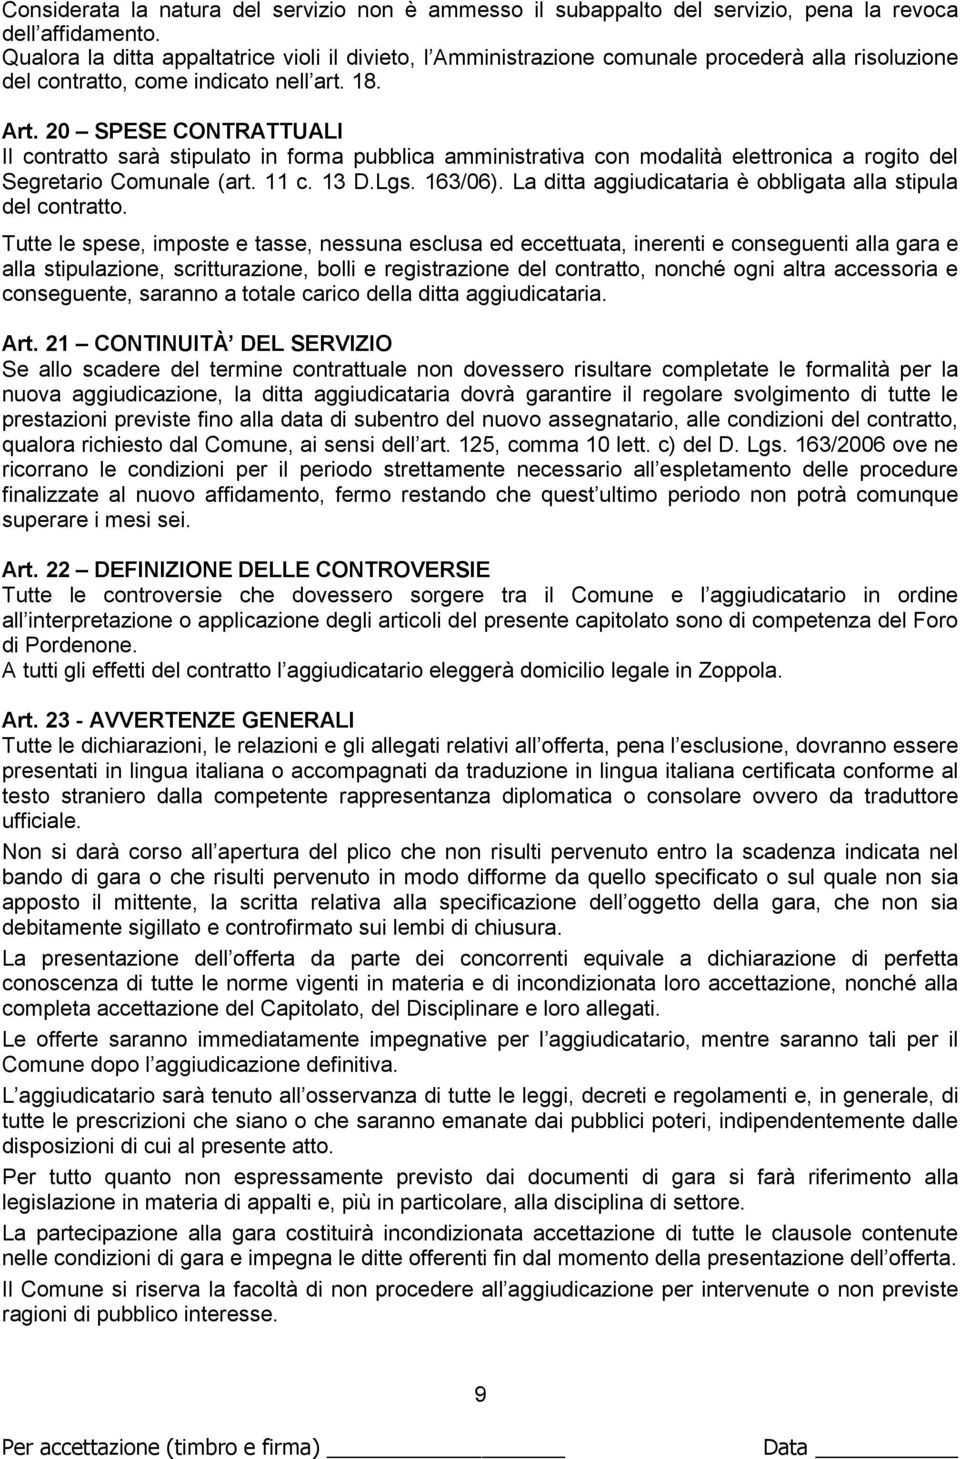 20 SPESE CONTRATTUALI Il contratto sarà stipulato in forma pubblica amministrativa con modalità elettronica a rogito del Segretario Comunale (art. 11 c. 13 D.Lgs. 163/06).